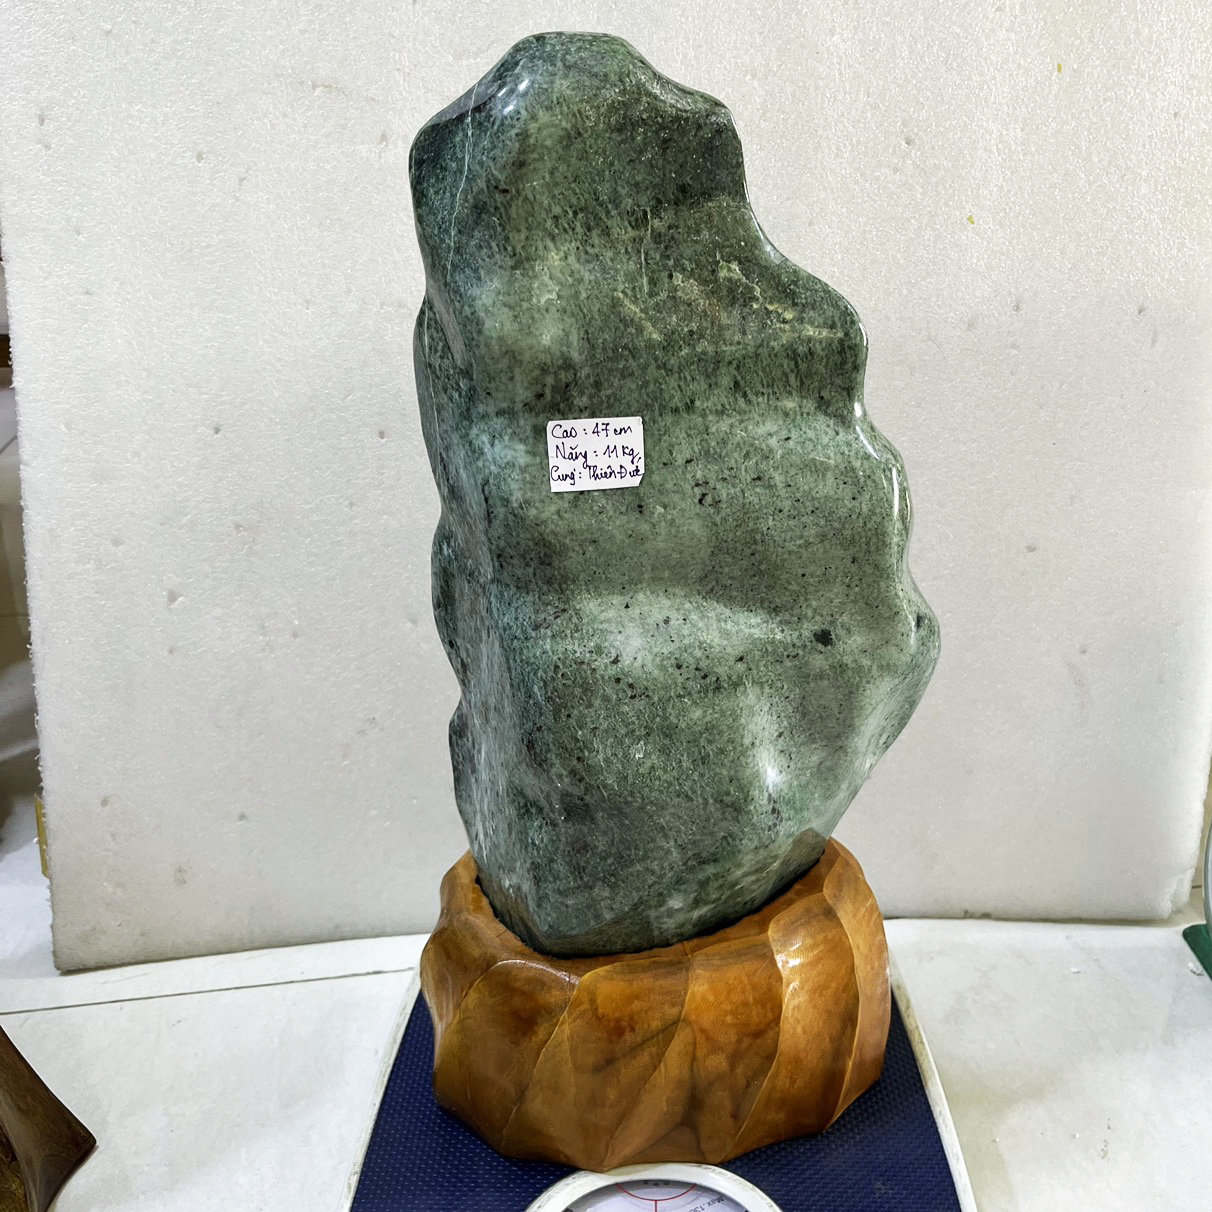 Đá, cây đá, trụ đá phong thủy serpentine cao 47 cm nặng 11 kg cho mệnh Hỏa và Mộc